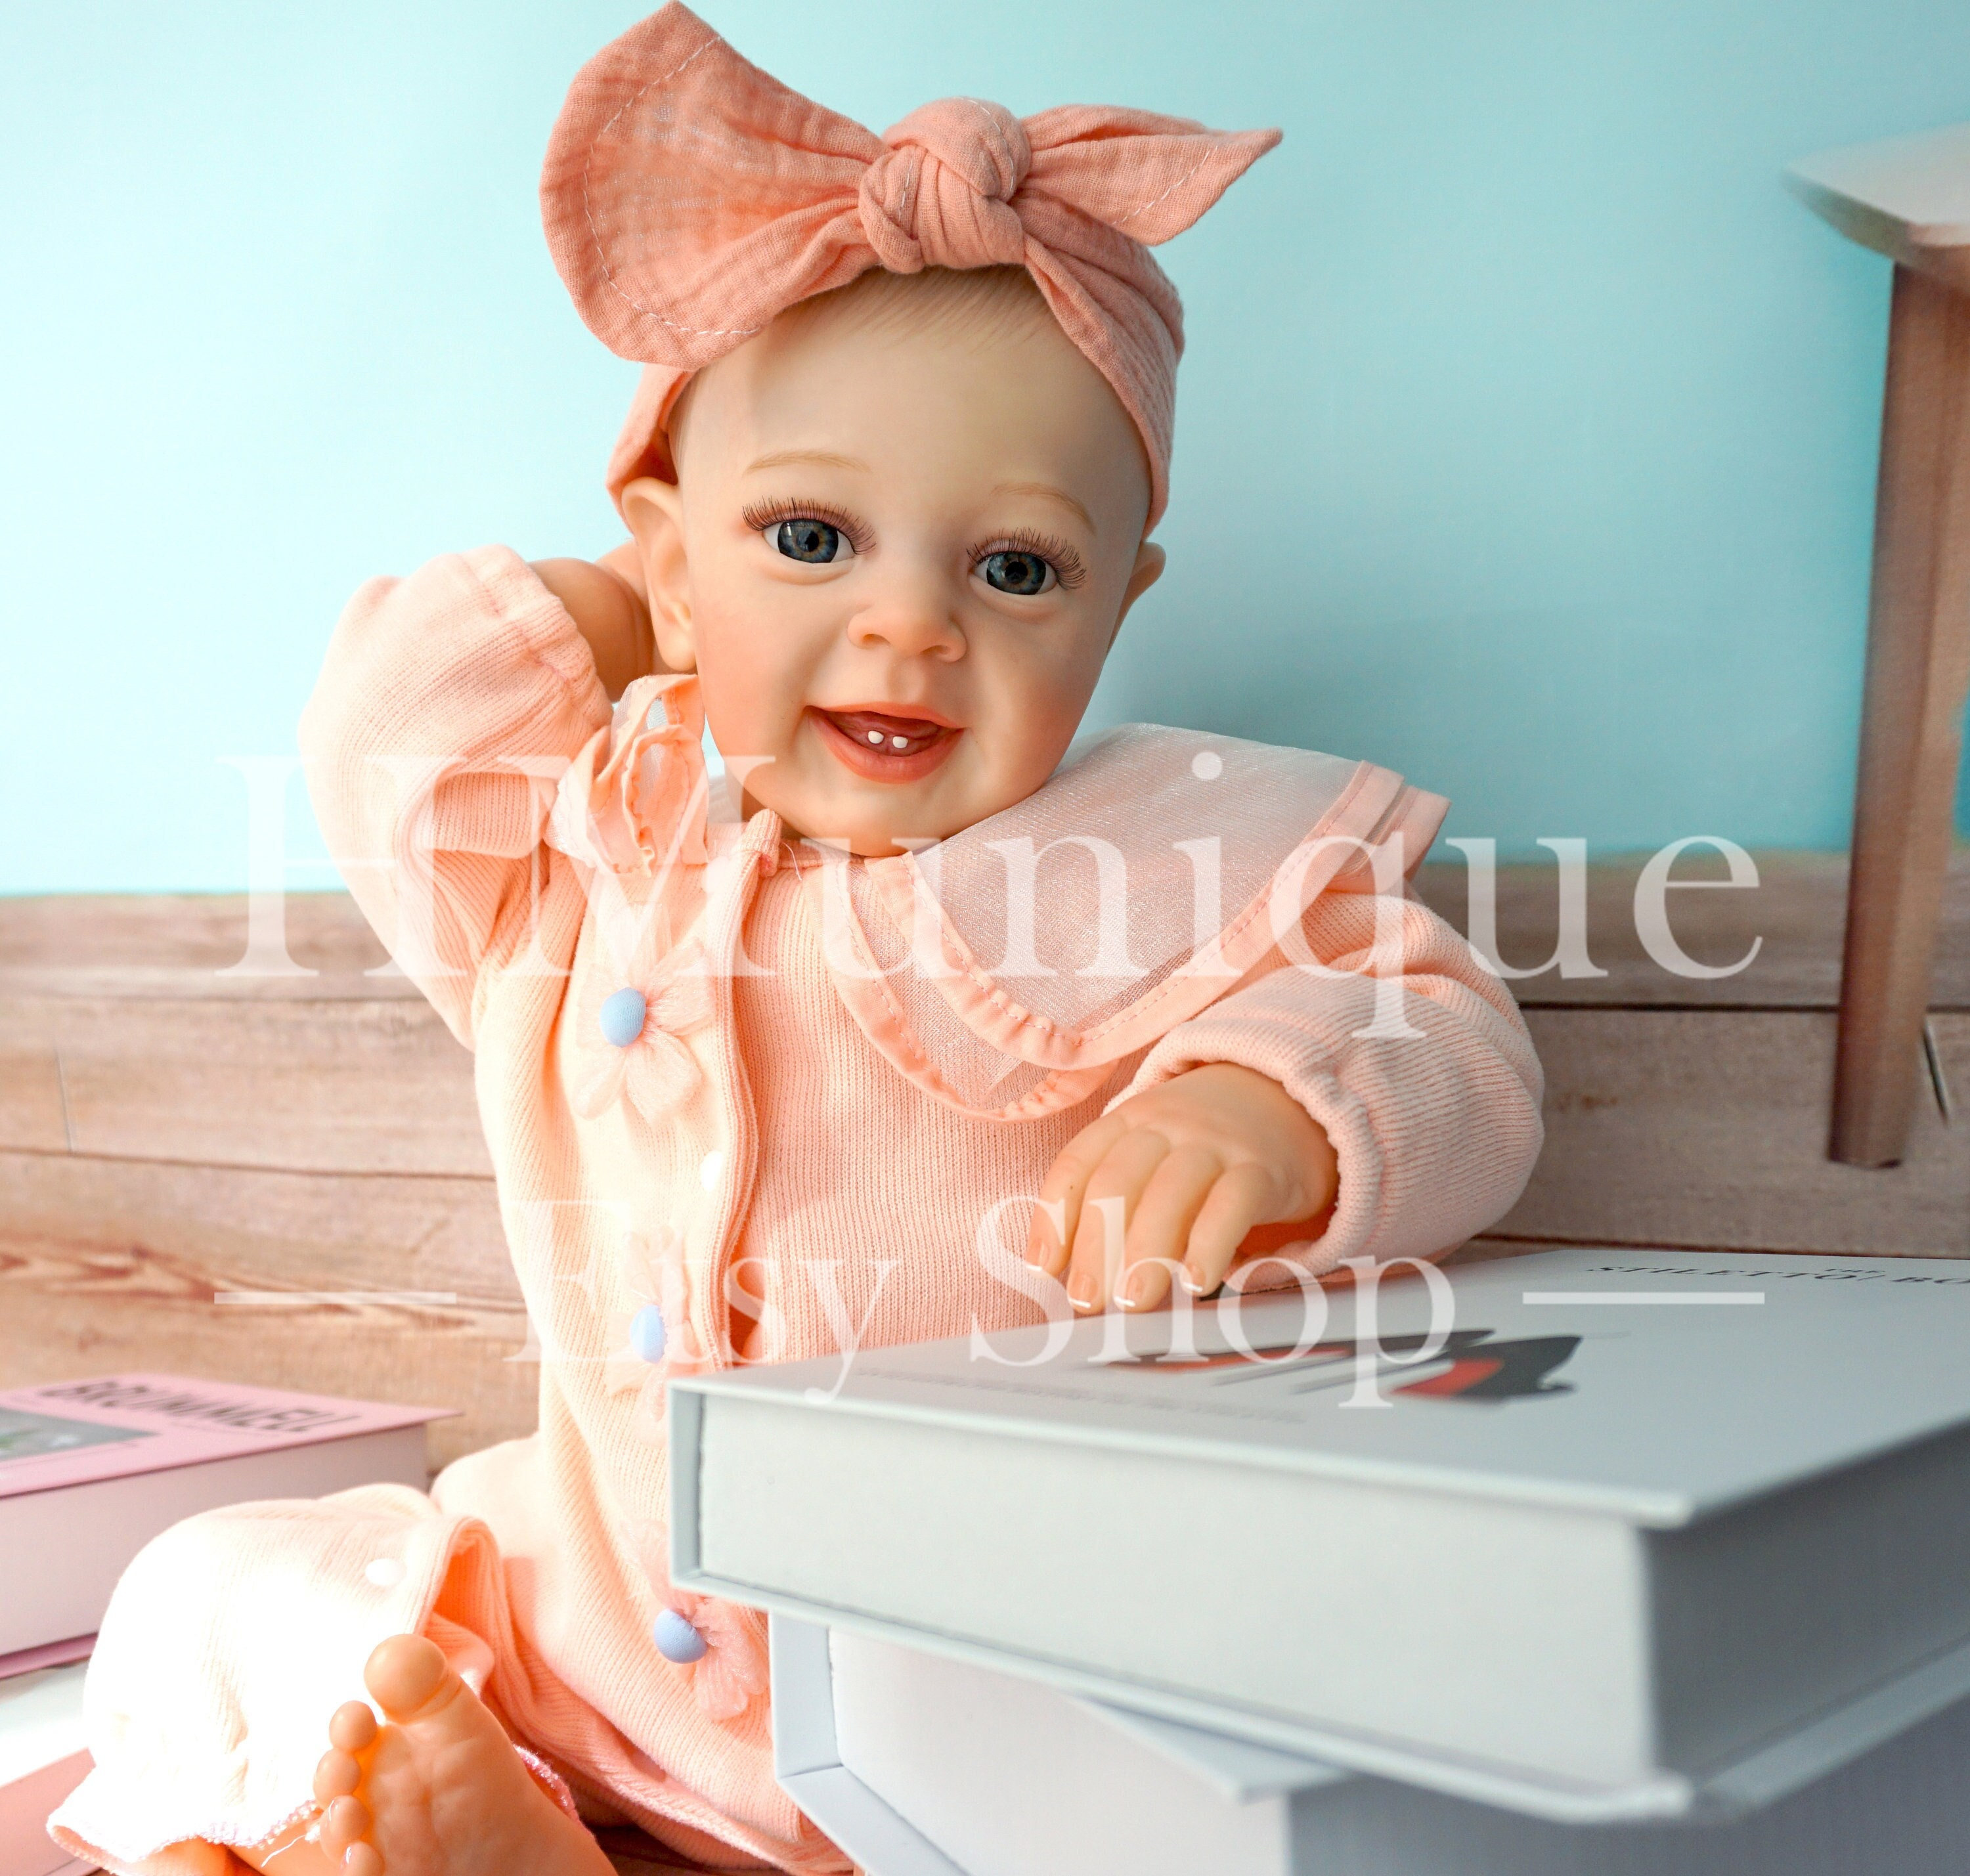 98cm Boneca Reborn Baby Doll Toys Real Life Ratio Bebe Reborn